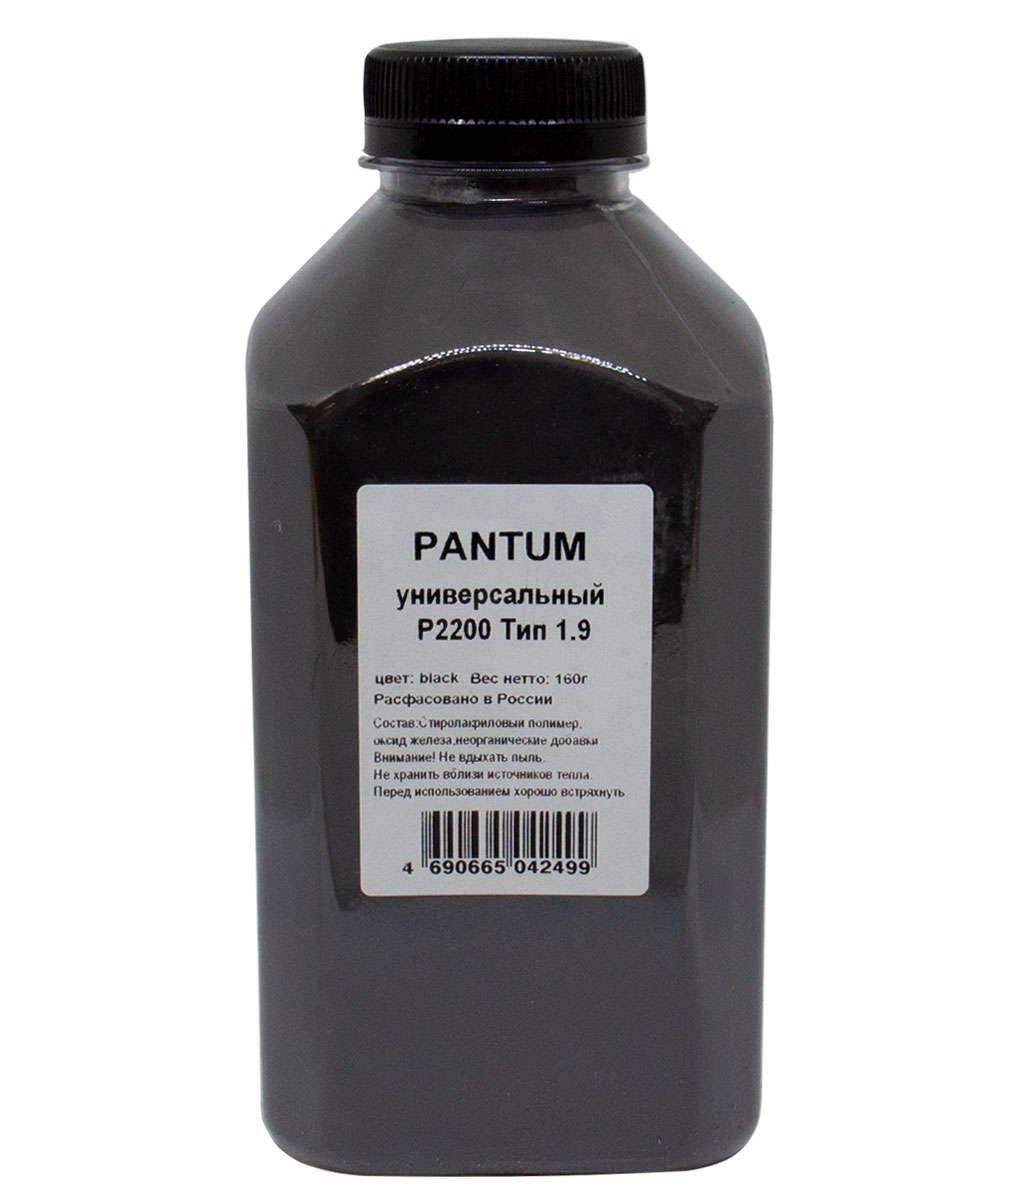 Тонер Pantum Универсальный для P2200, Тип 1.9, Bk, 160 г,банка